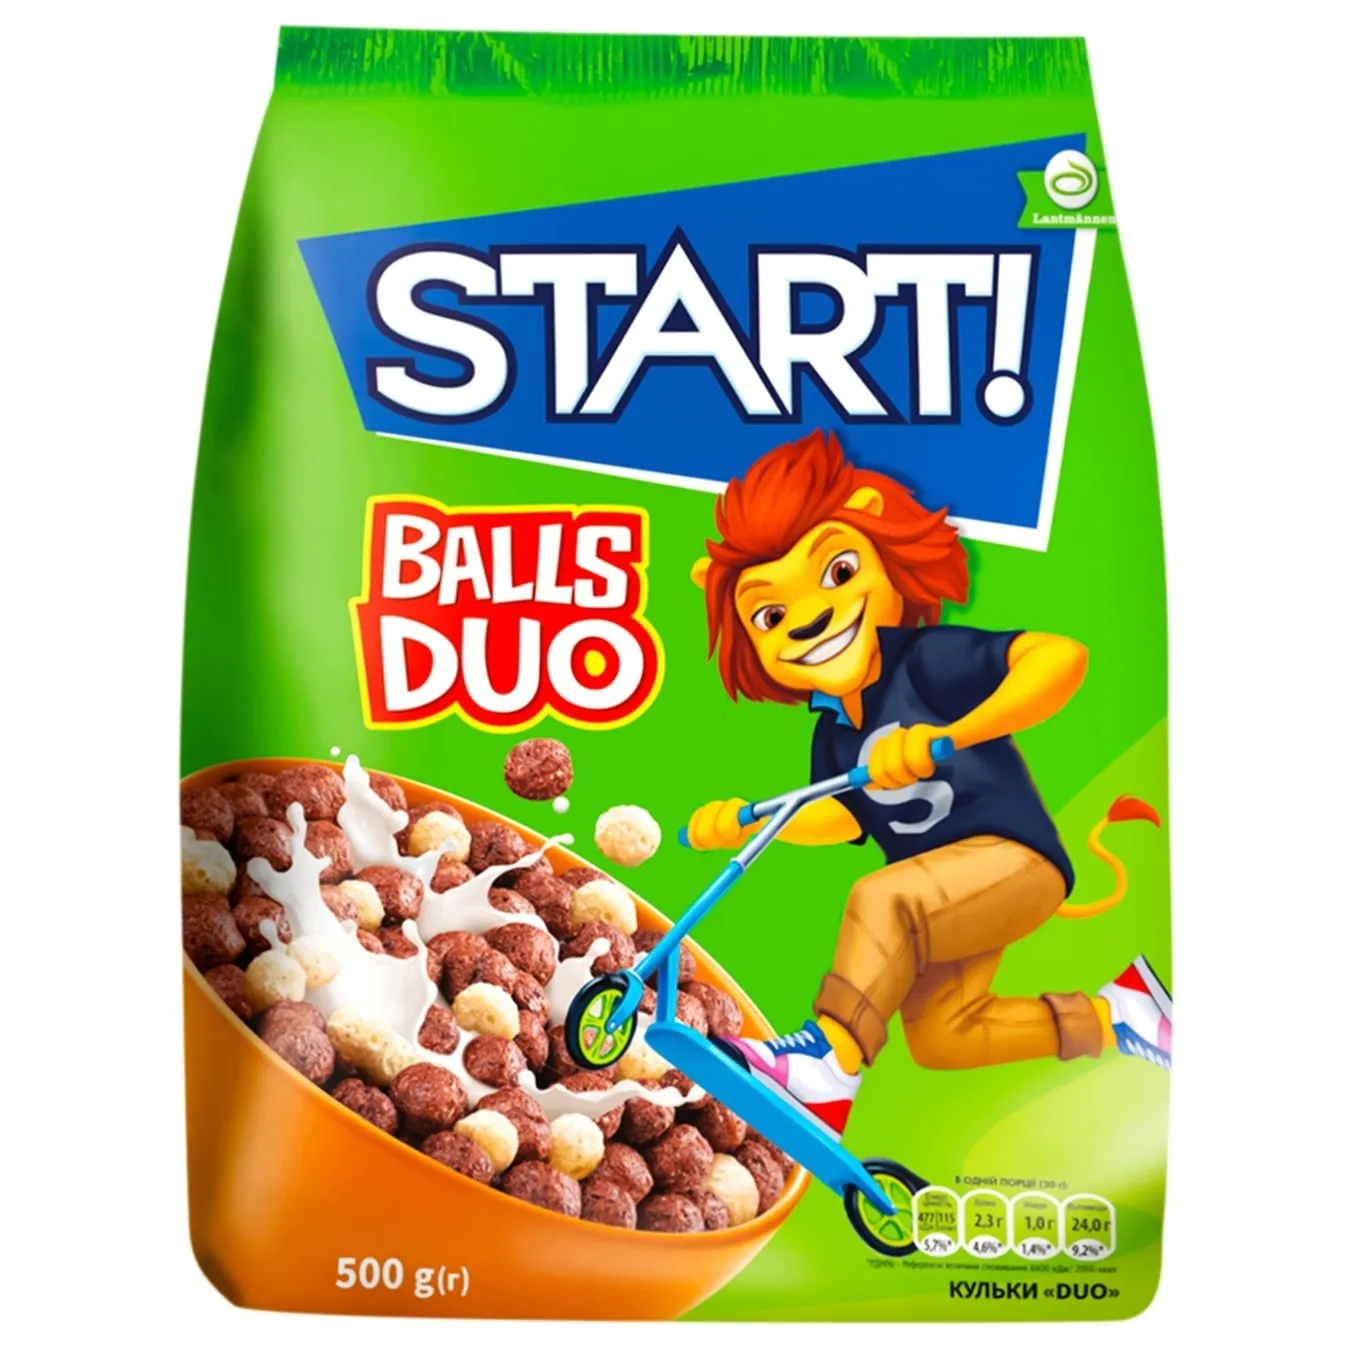 Duo Start balls! 500 g